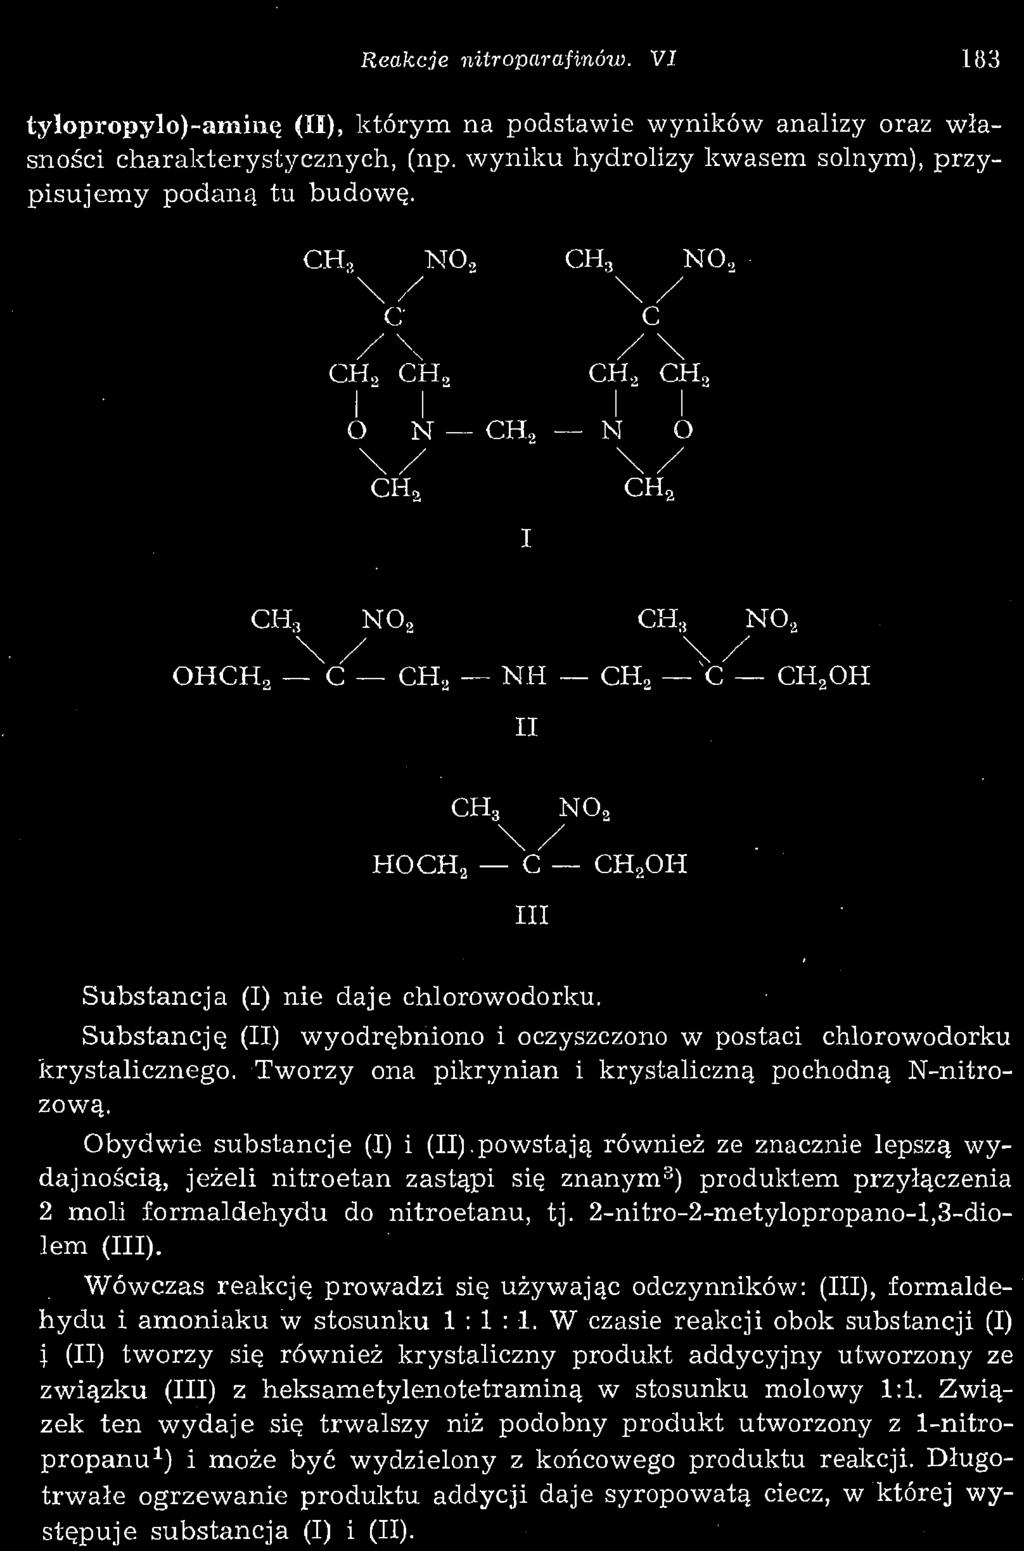 Wówczas reakcję prowadzi się używając odczynników: (III), formaldehydu i amoniaku w stosunku 1 : 1 : 1.